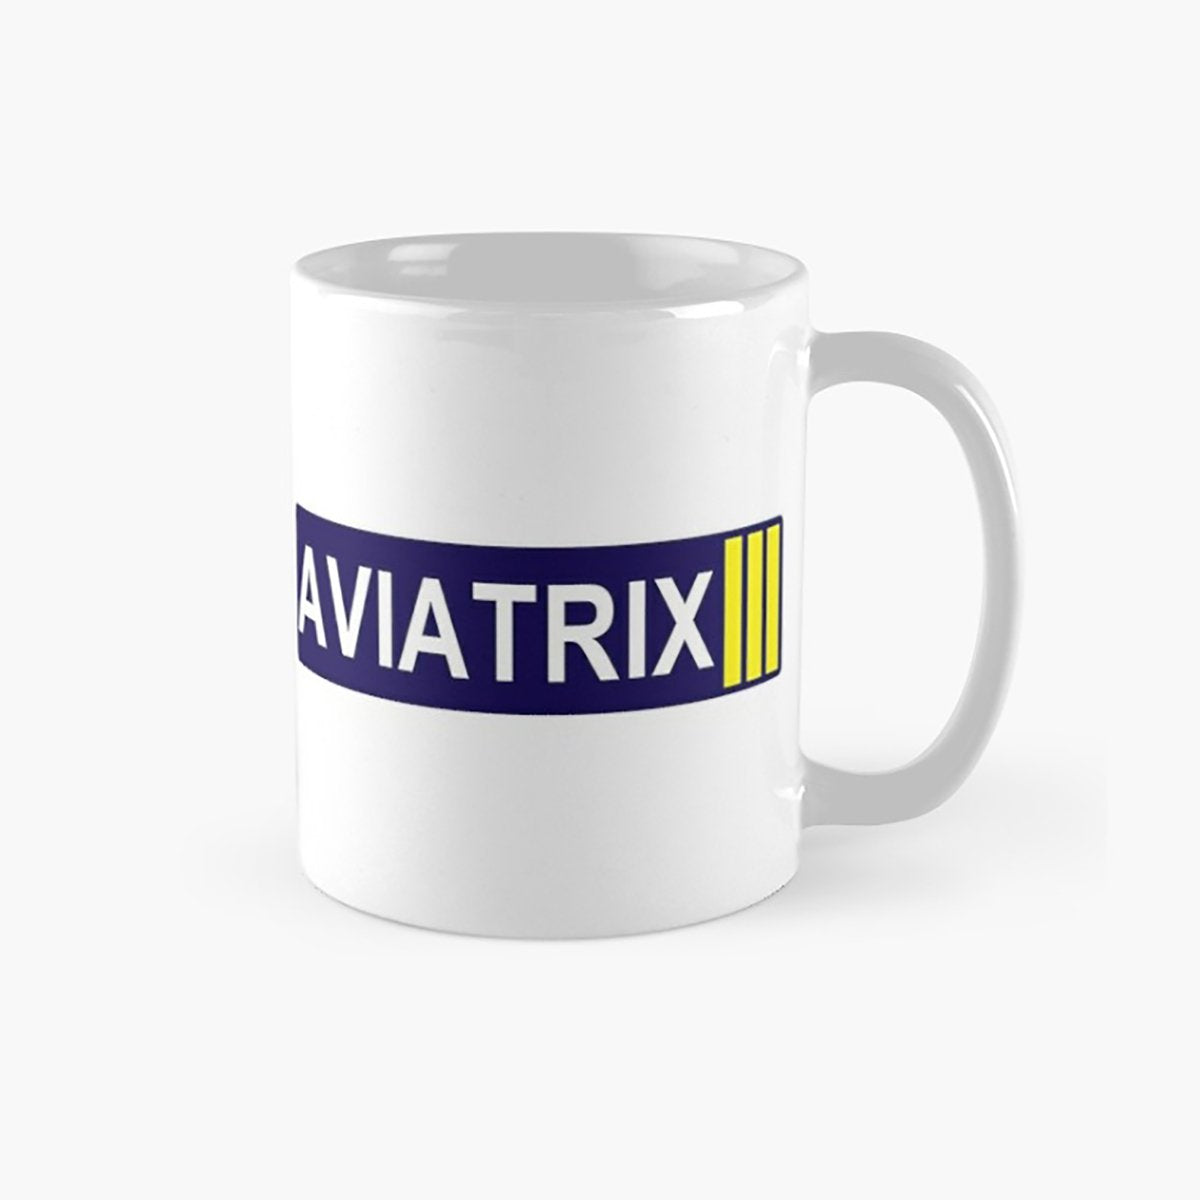 Aviatrix Mug